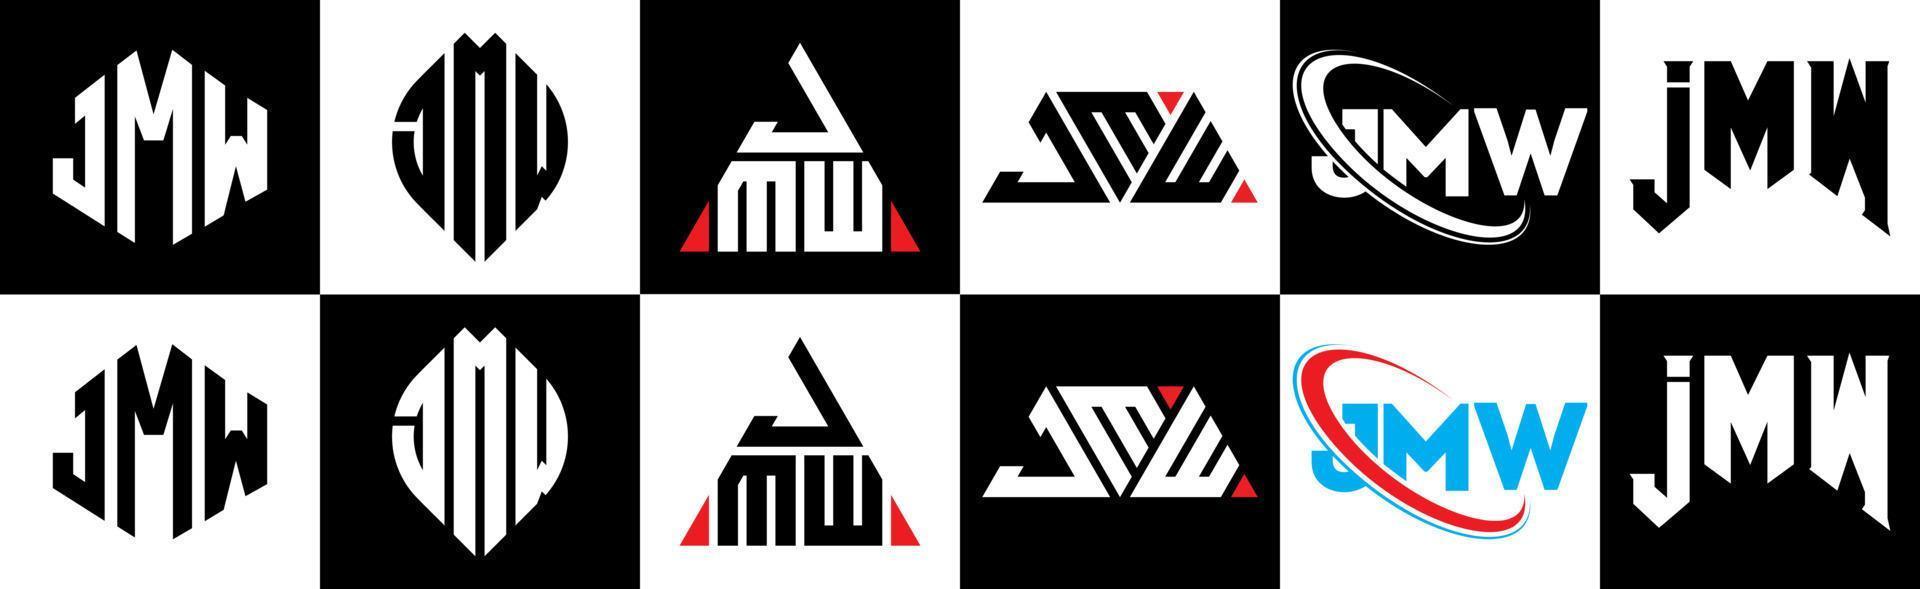 jmw brief logo ontwerp in zes stijl. jmw veelhoek, cirkel, driehoek, zeshoek, vlak en gemakkelijk stijl met zwart en wit kleur variatie brief logo reeks in een tekengebied. jmw minimalistische en klassiek logo vector